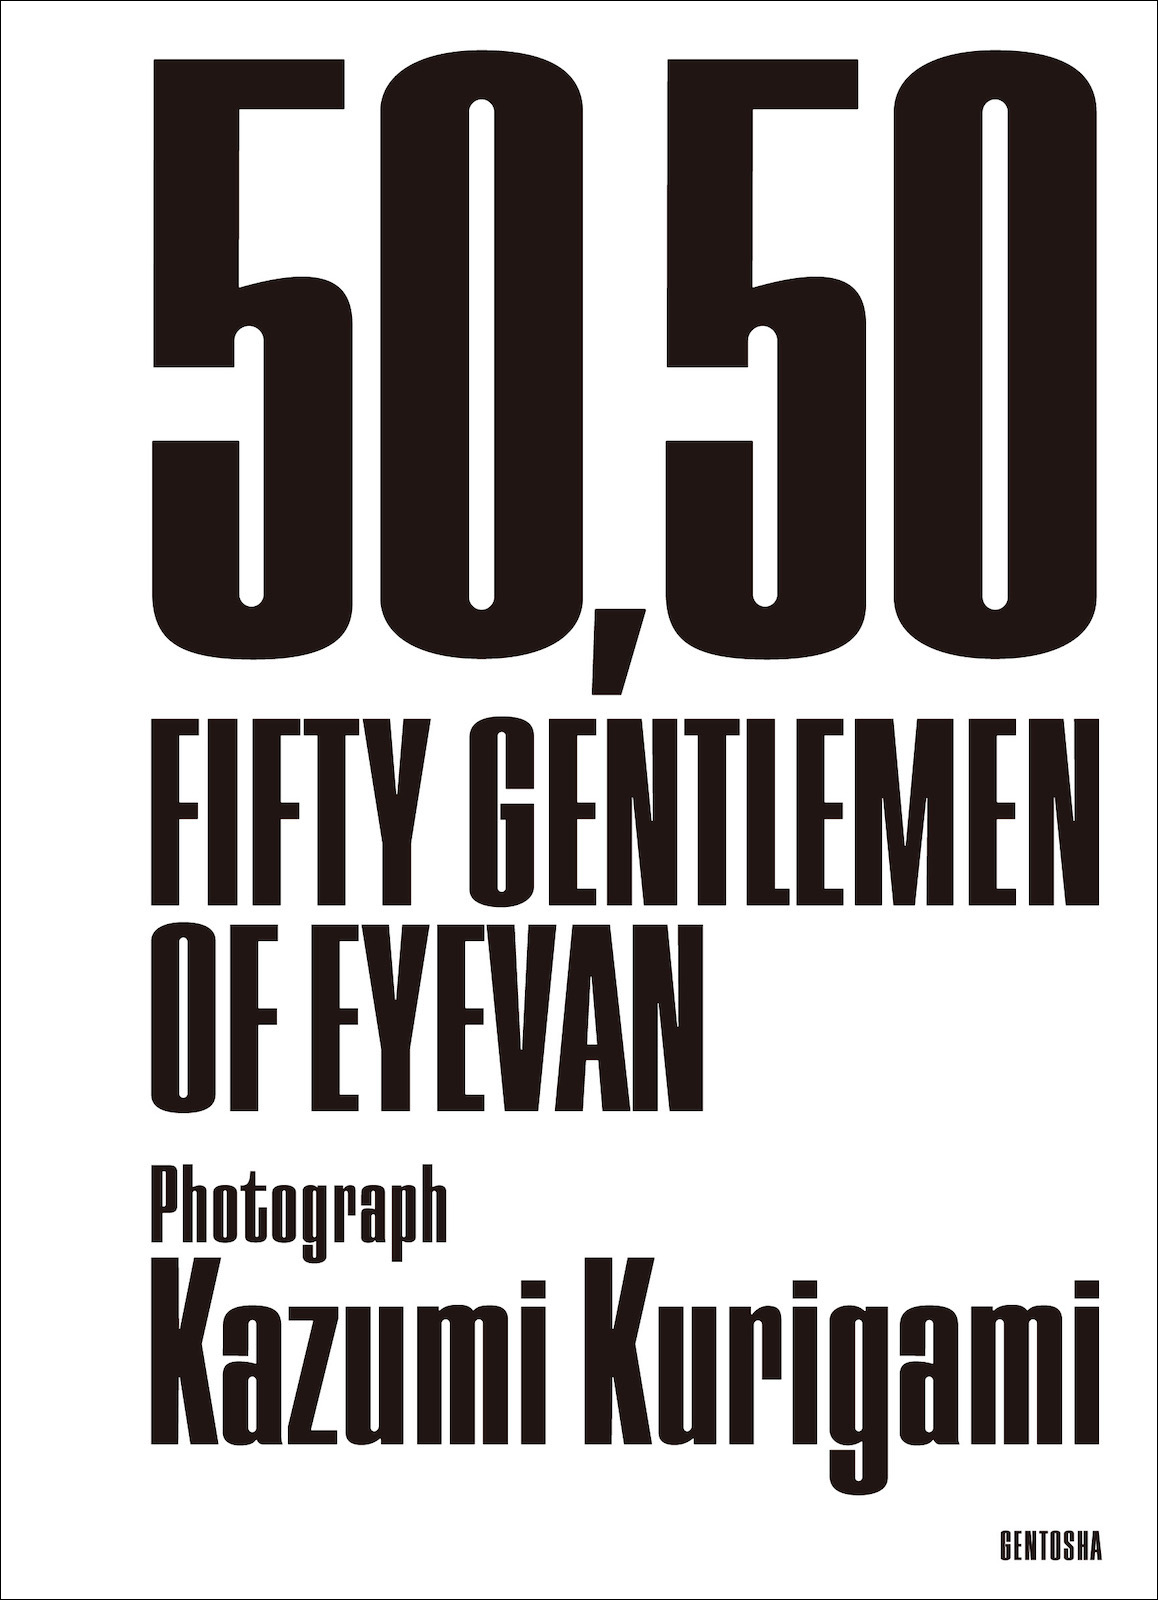 『50,50 FIFTY GENTLEMEN OF EYEVAN』